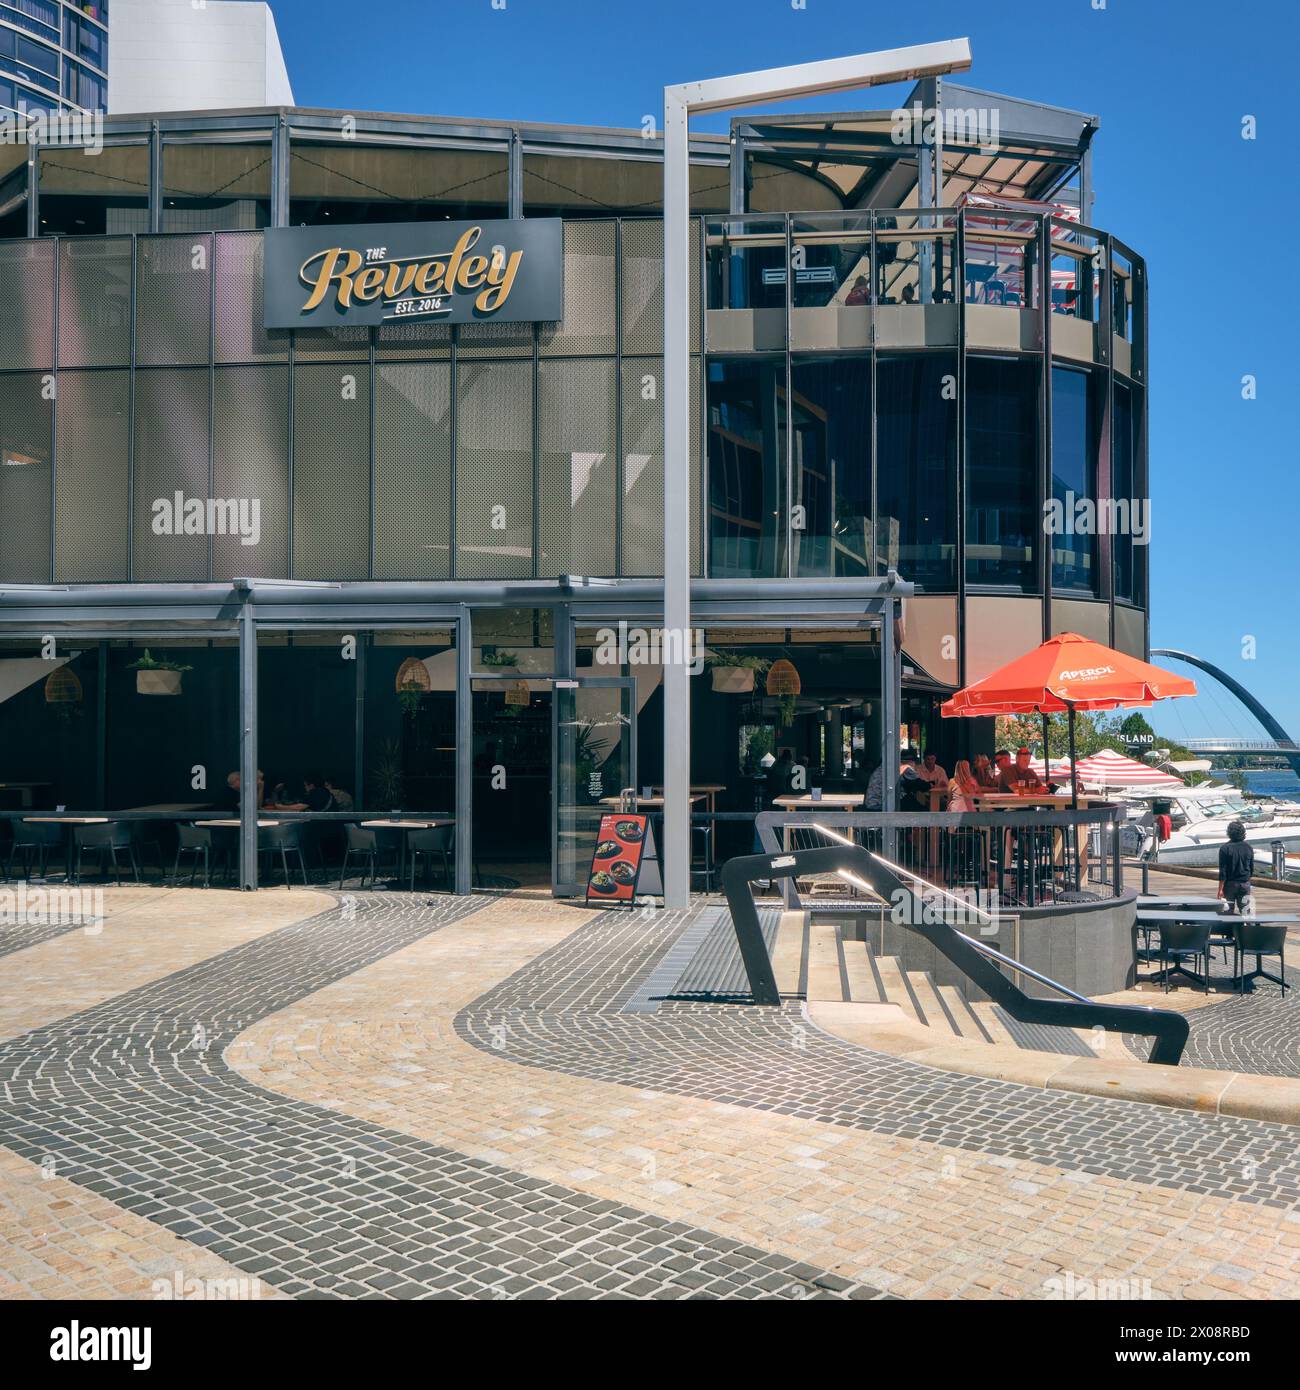 The Reveley wurde 2016 gegründet und ist ein Bar-, Restaurant- und Veranstaltungsort am Elizabeth Quay in Perth, Western Australia. Stockfoto